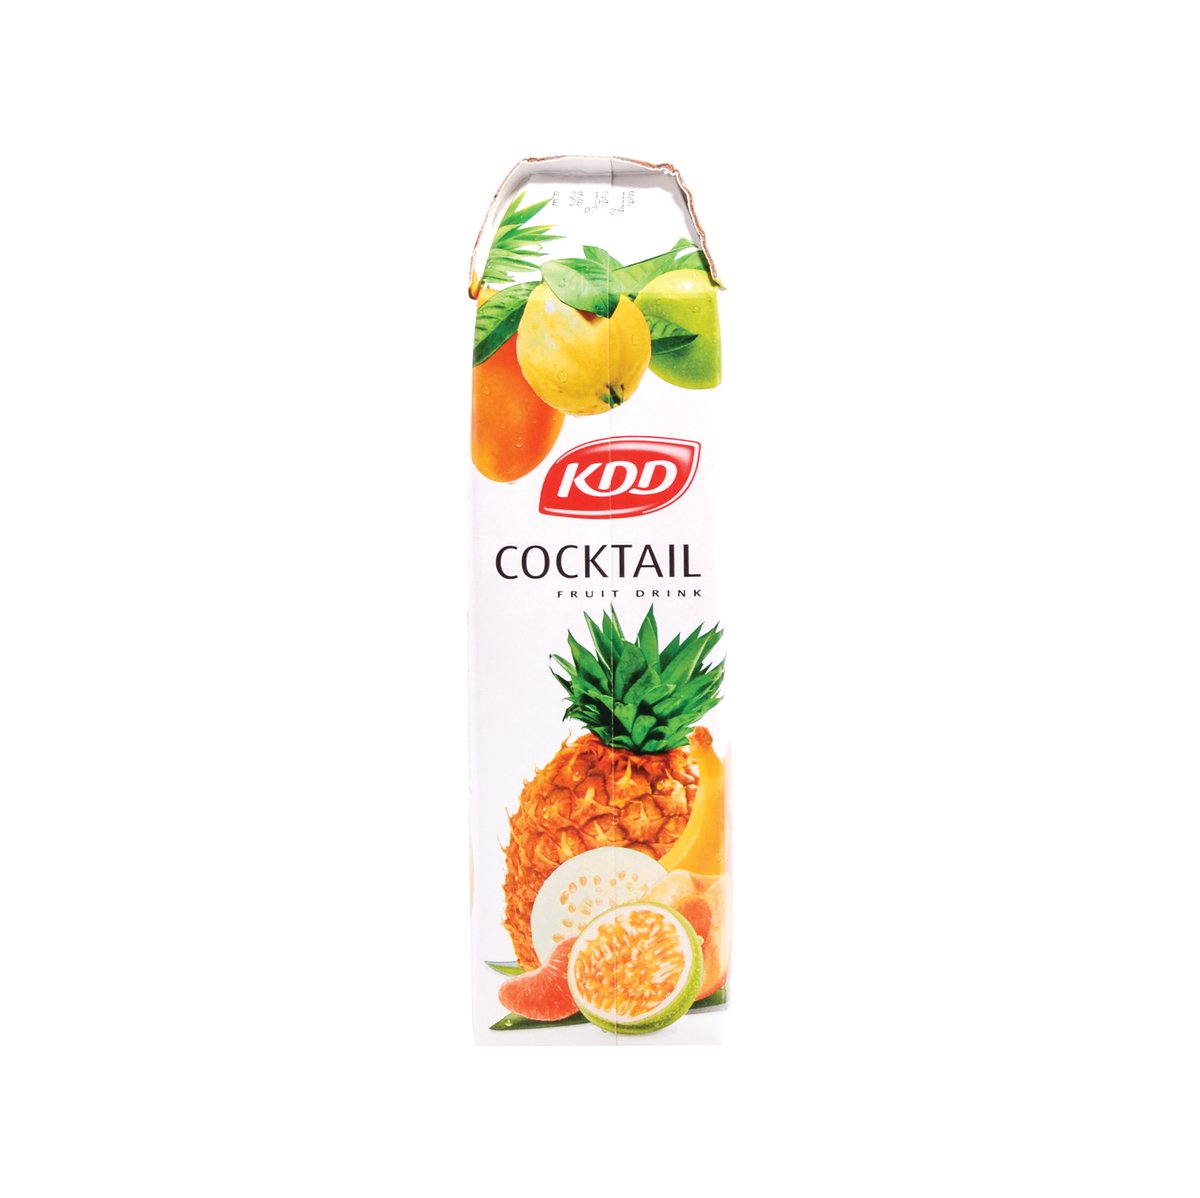 KDD Cocktail Fruit Drink 1Litre